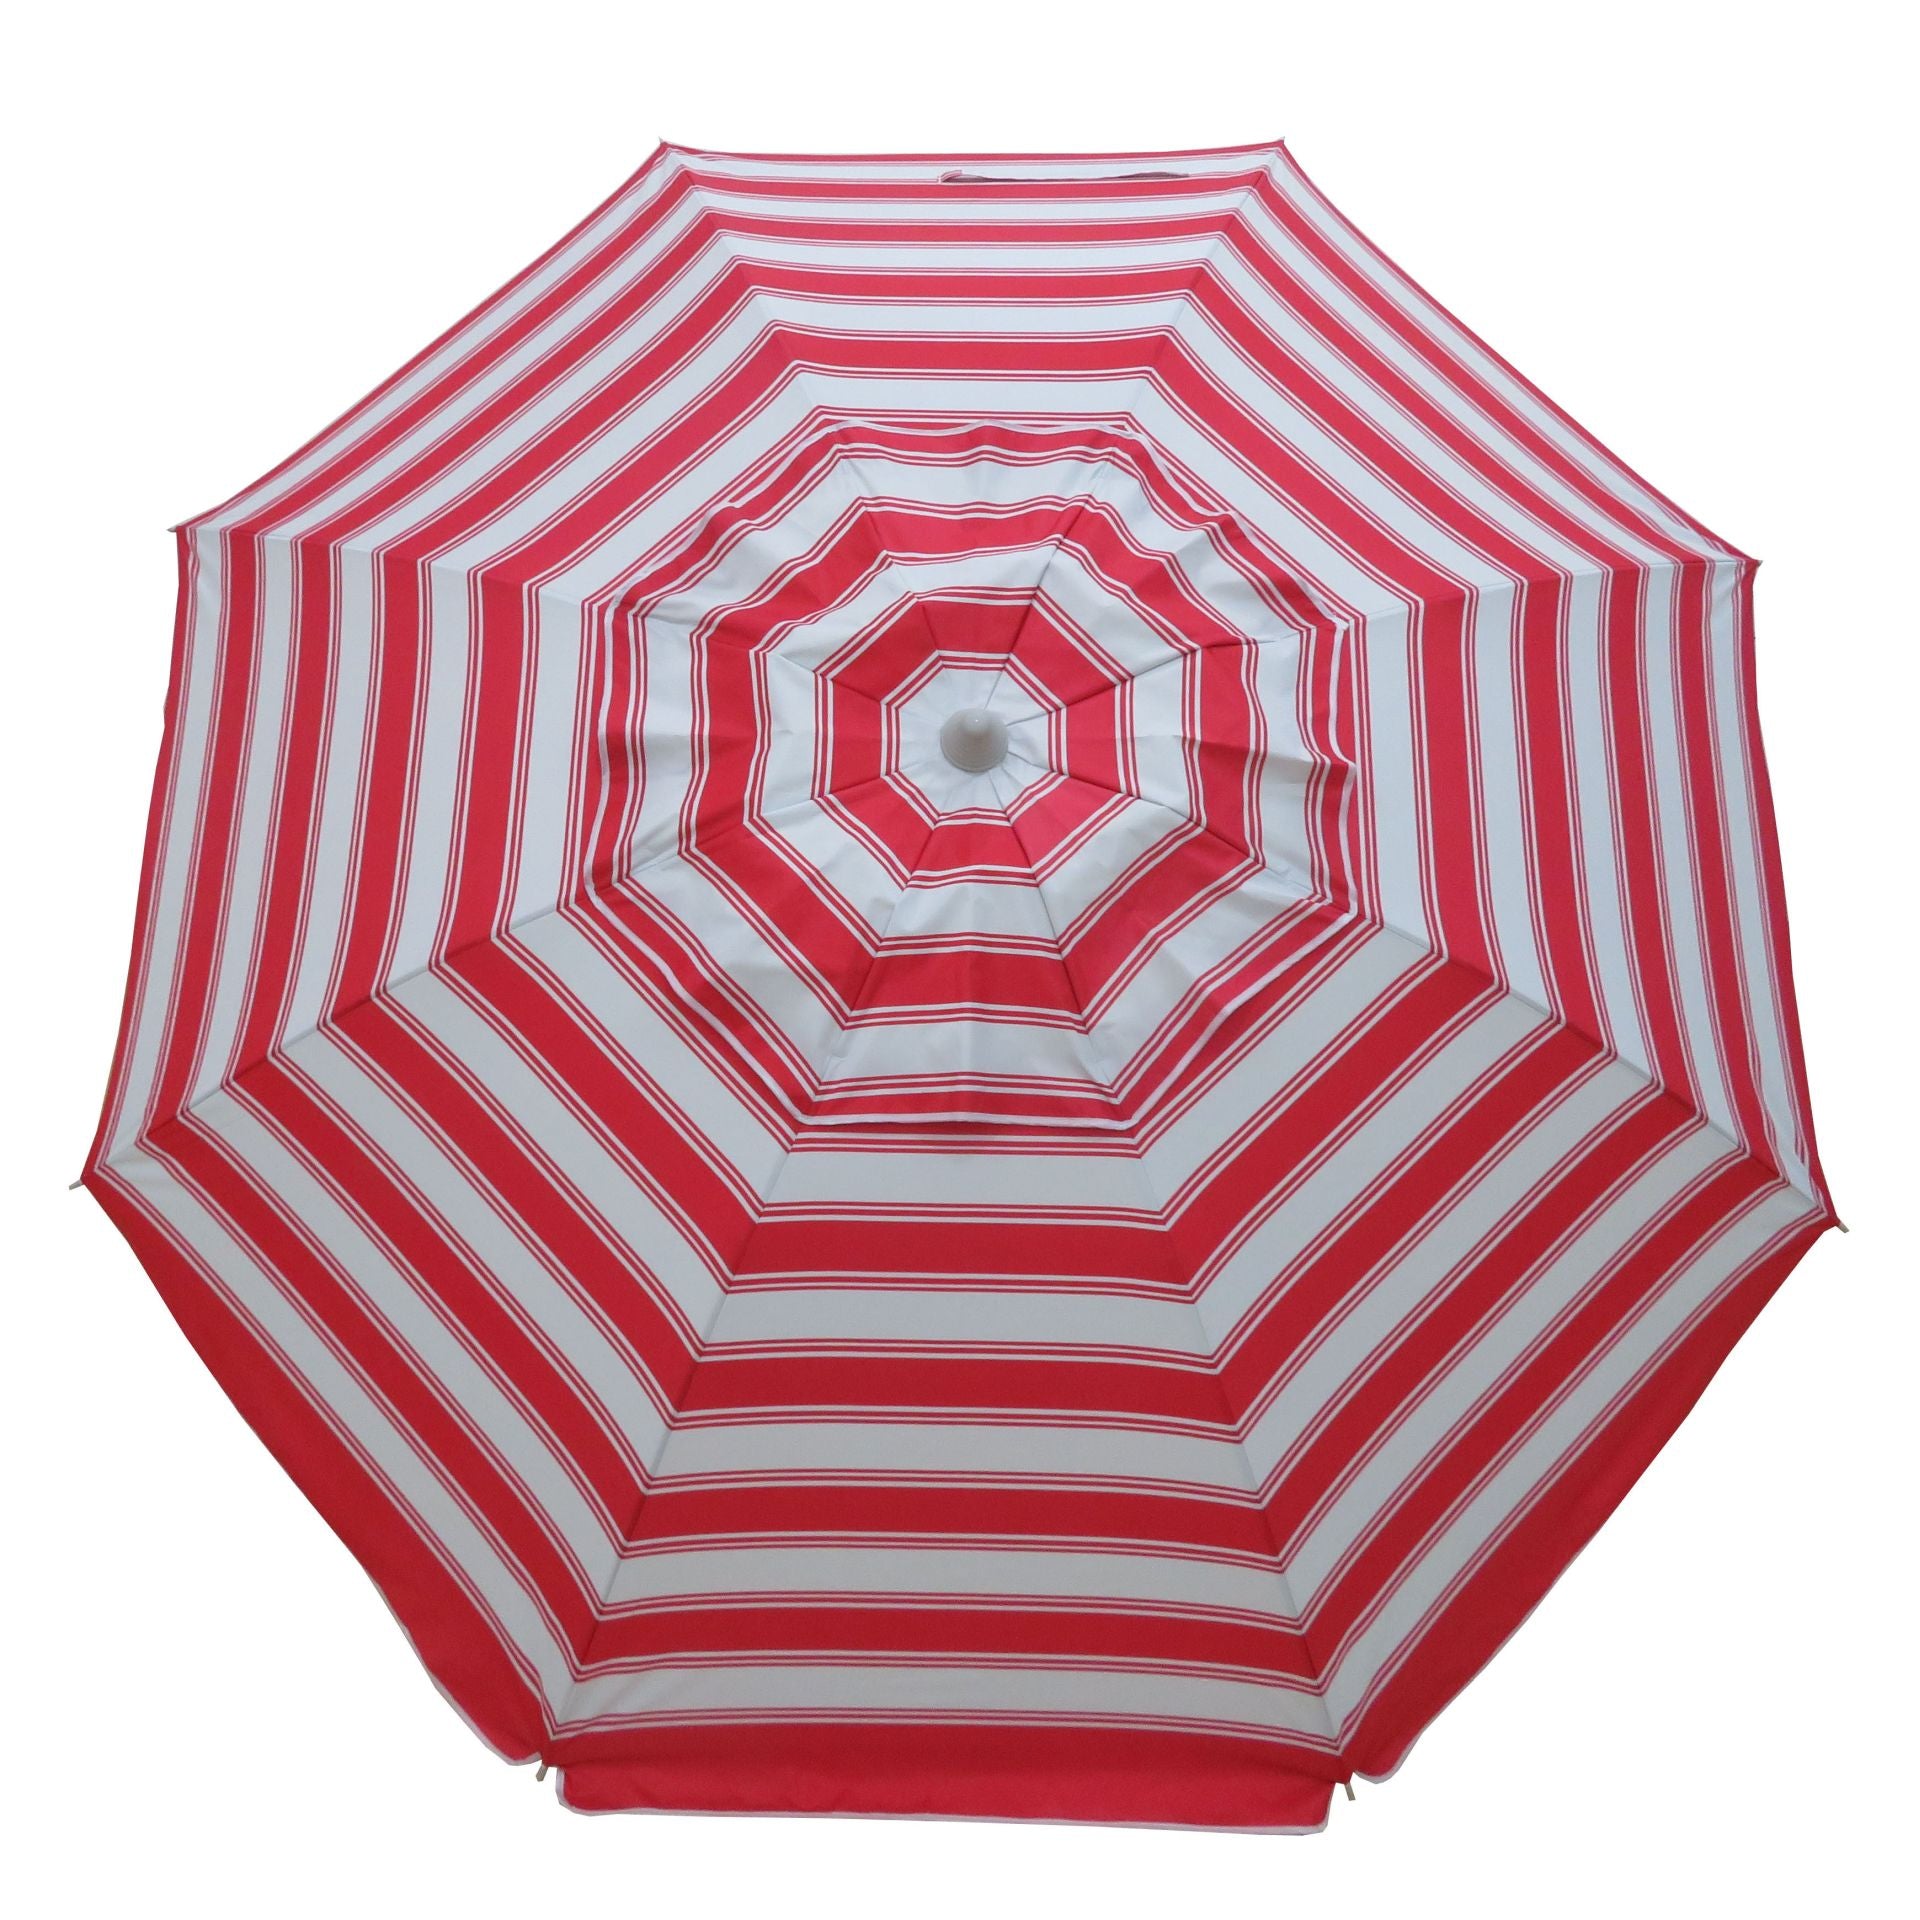 PortaBrella® Travel Beach Umbrella - Portabrella Canada